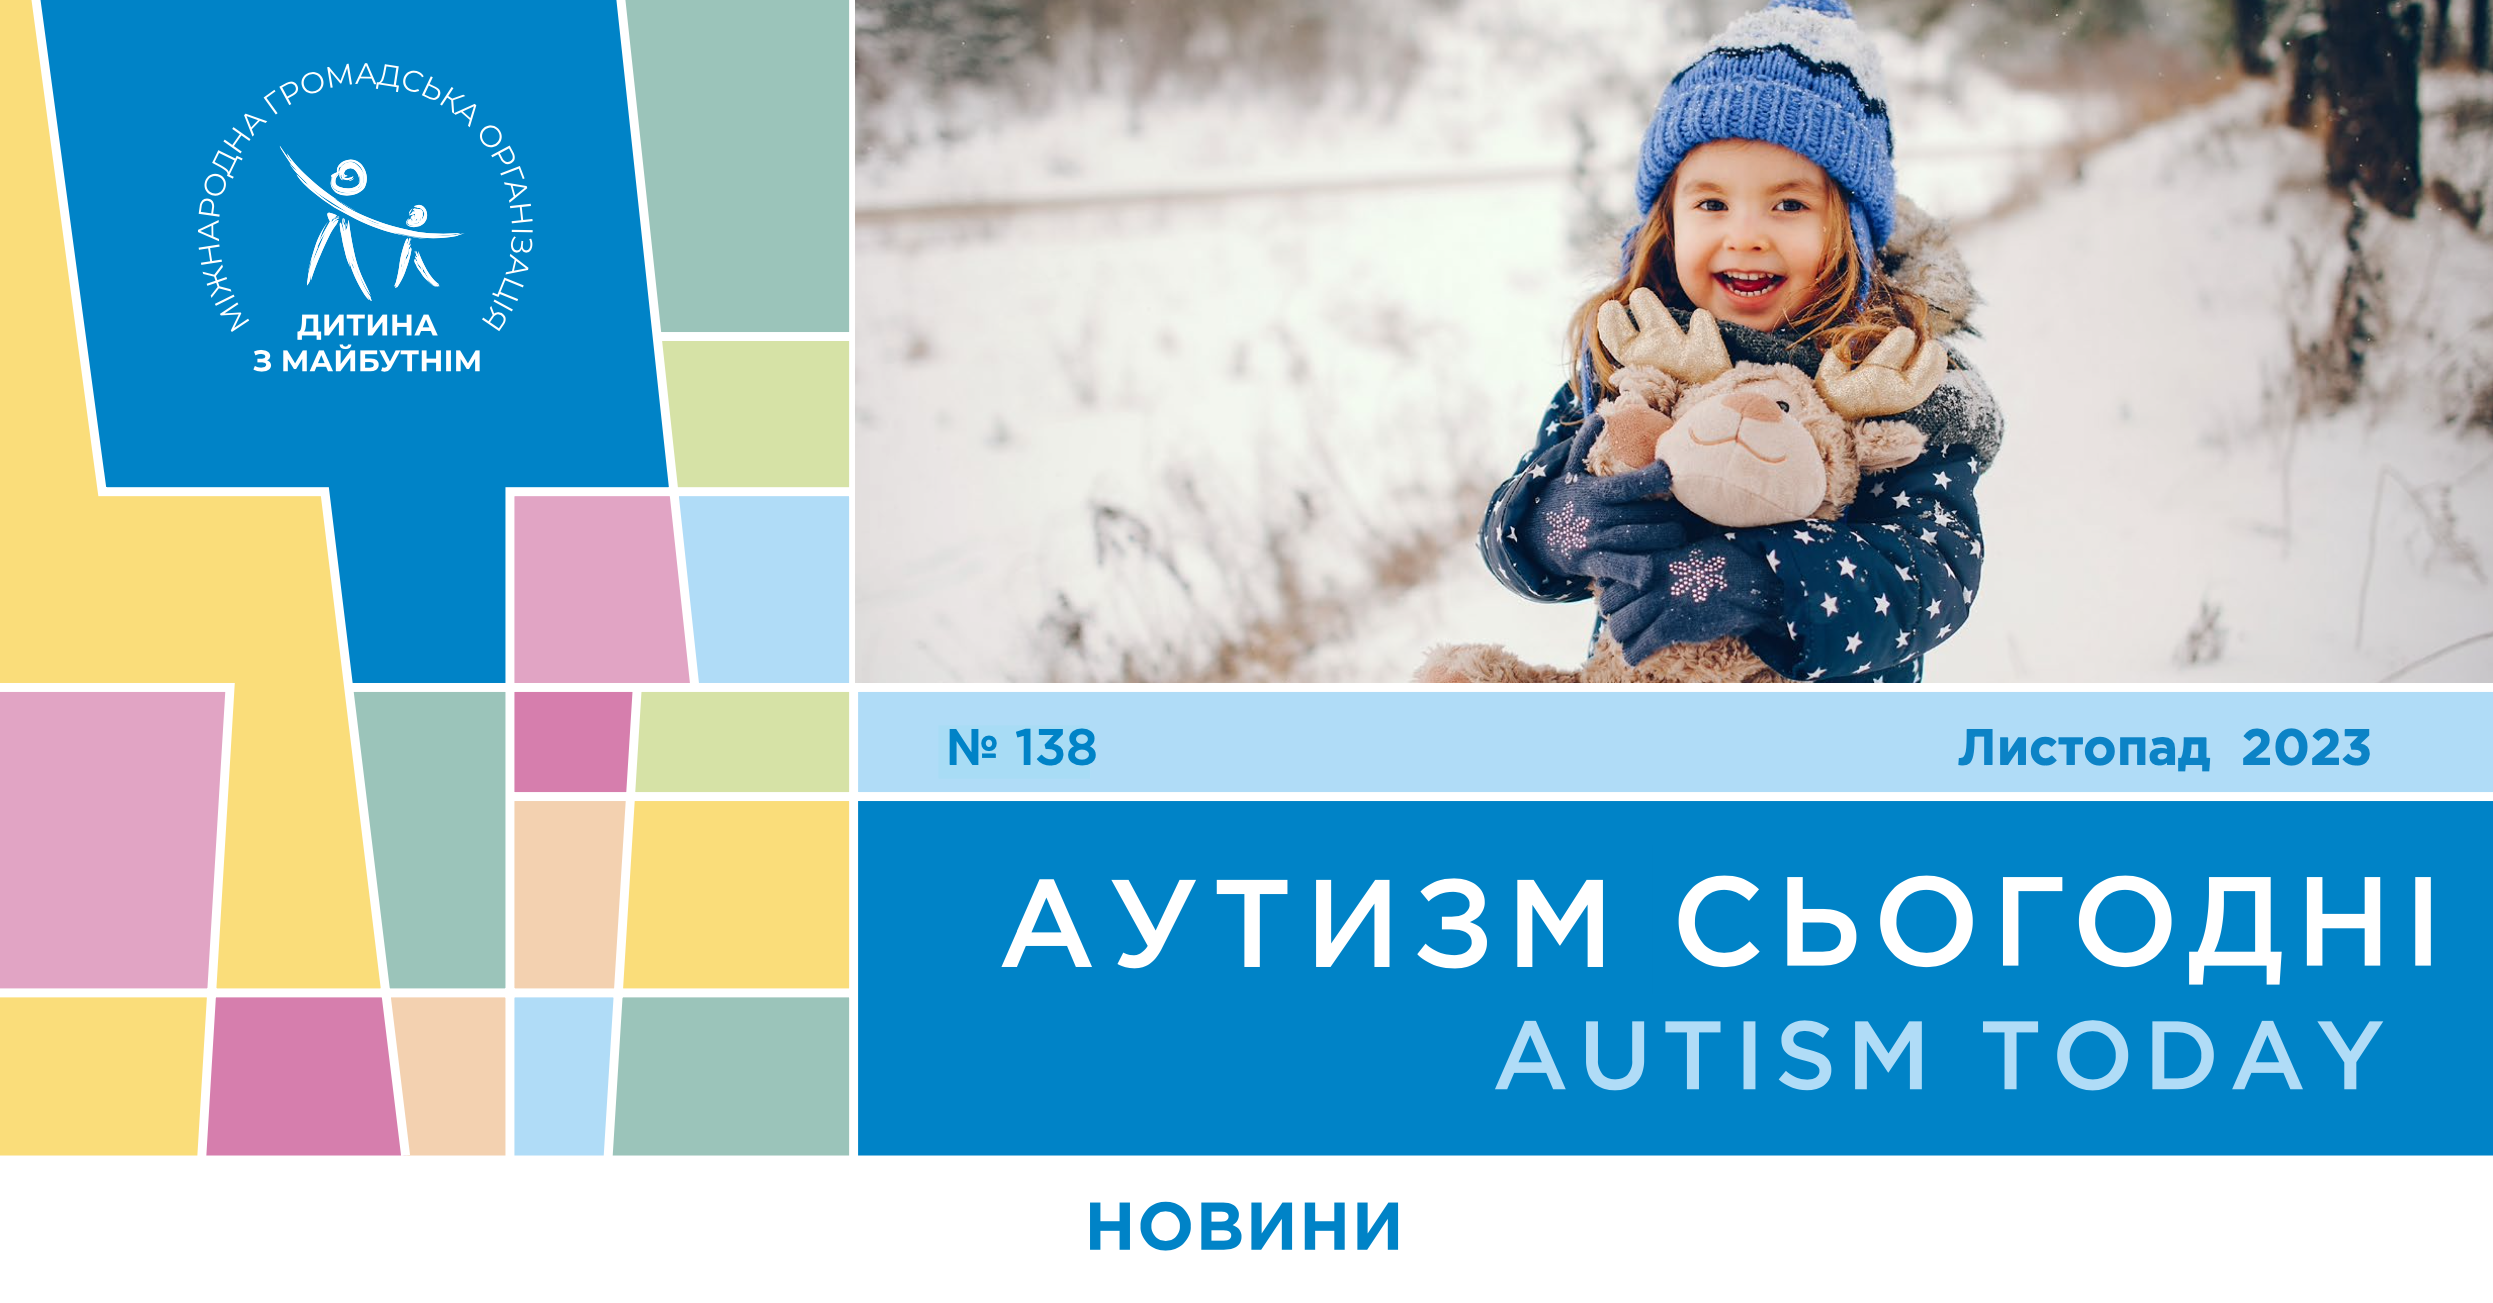 Книга «Планета А» Максима Бровченко уже в продаже, уровень удовлетворения жизнью взрослых с аутизмом и проект «Зрозумілий світ» — на страницах «Аутизм сегодня» за ноябрь 2023 года